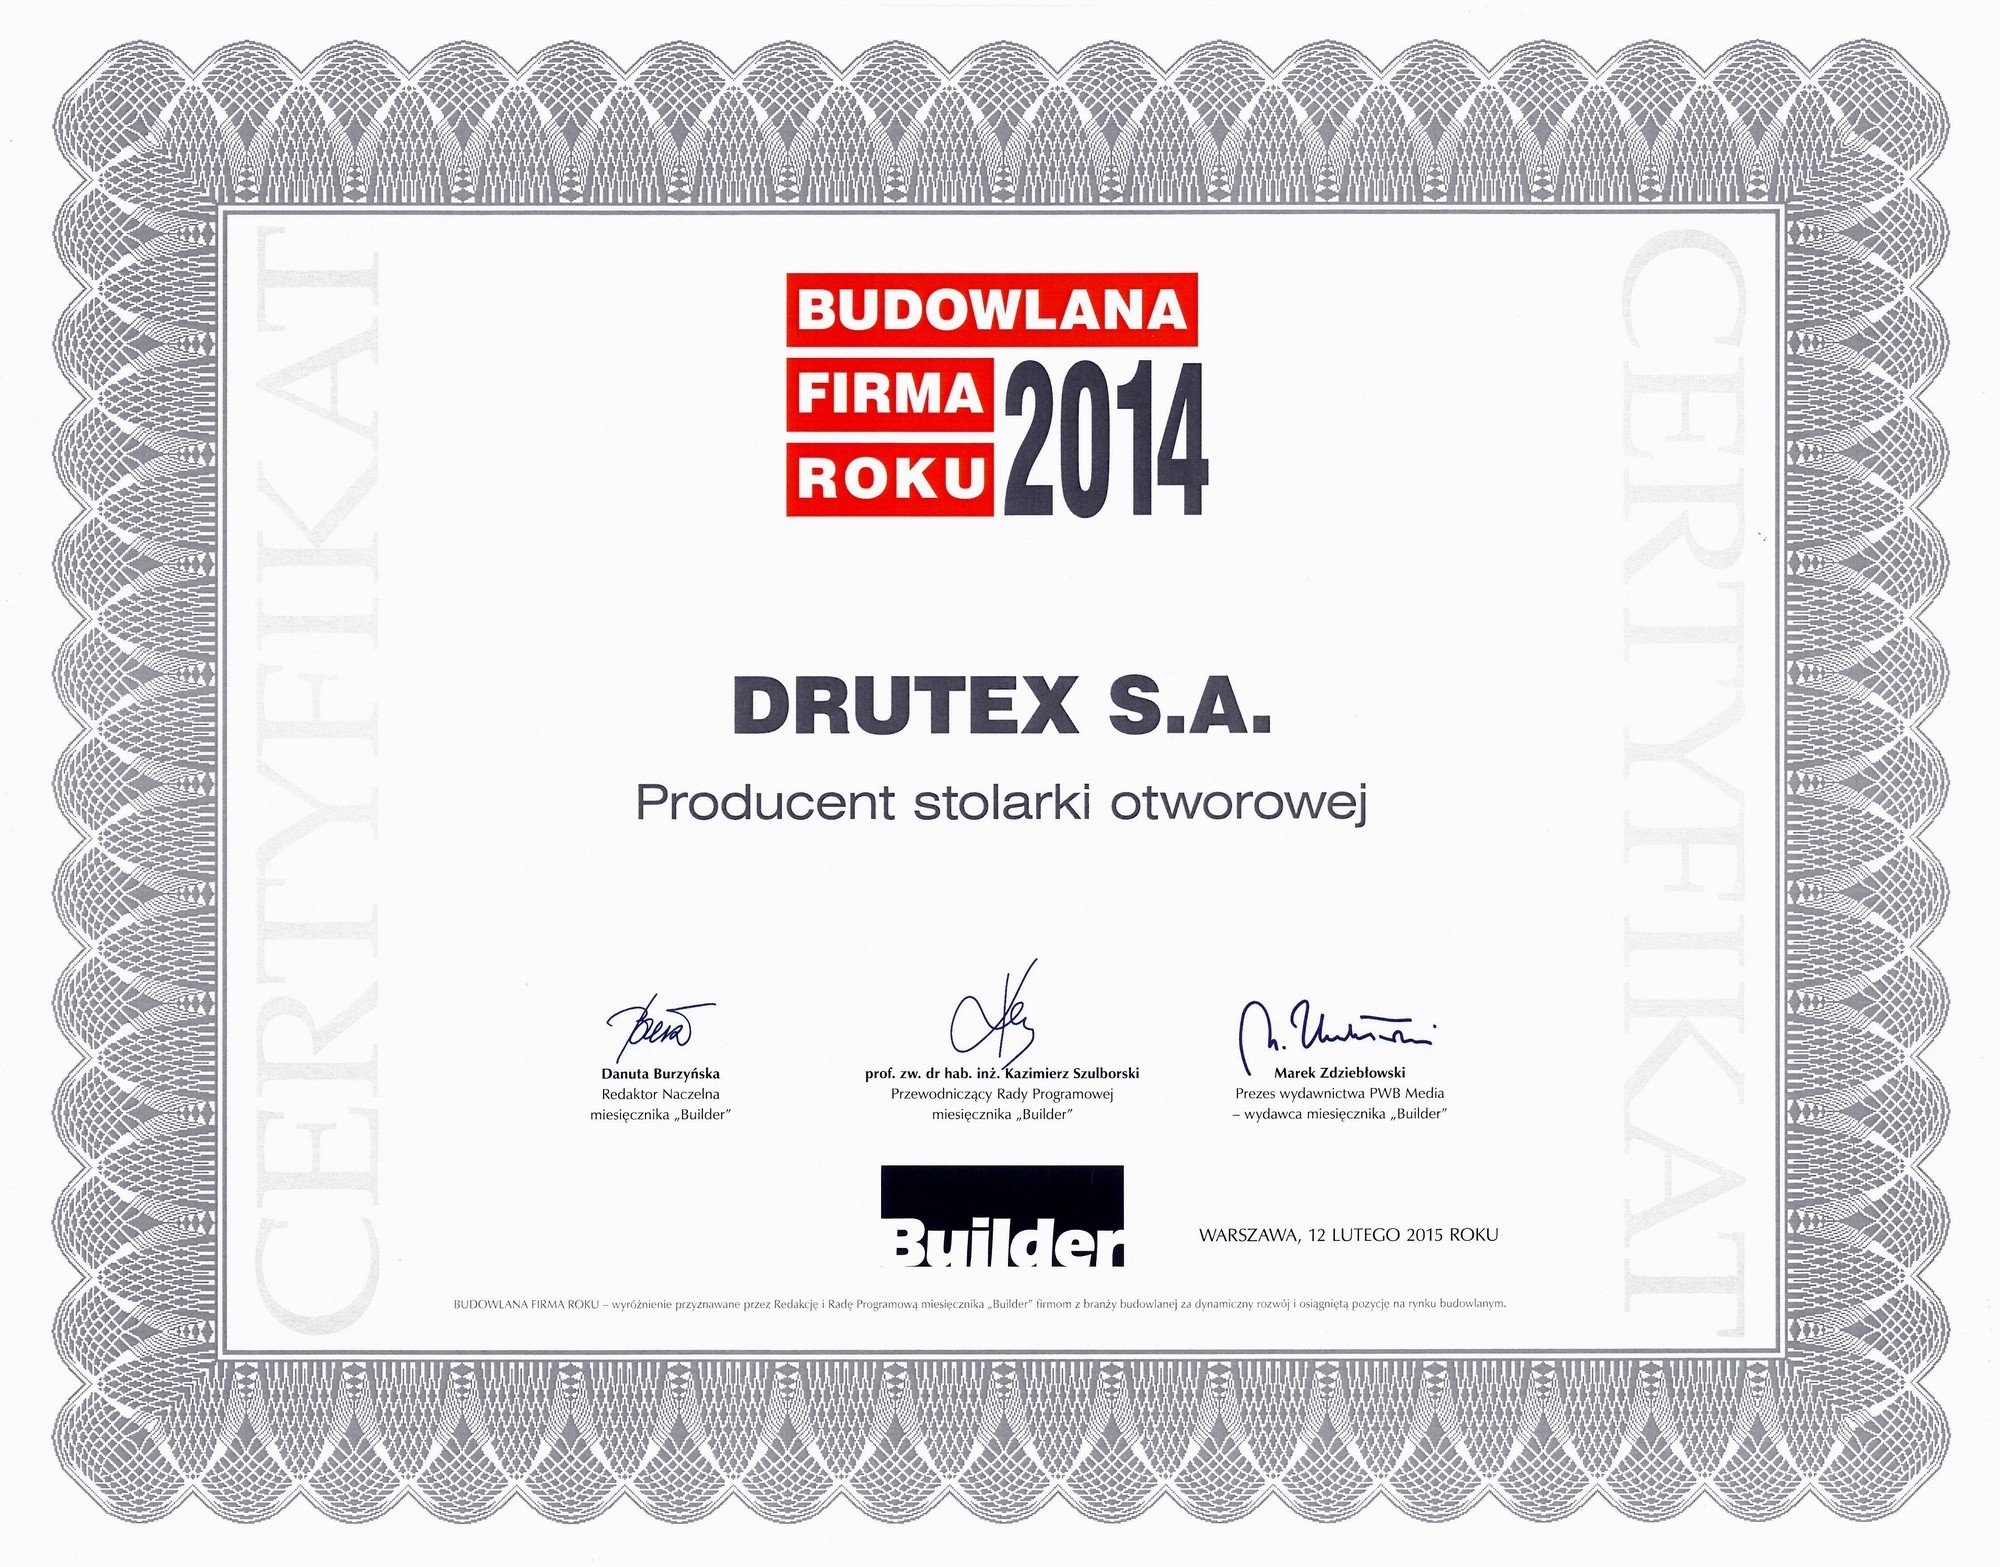 DRUTEX stavebná firma roka!